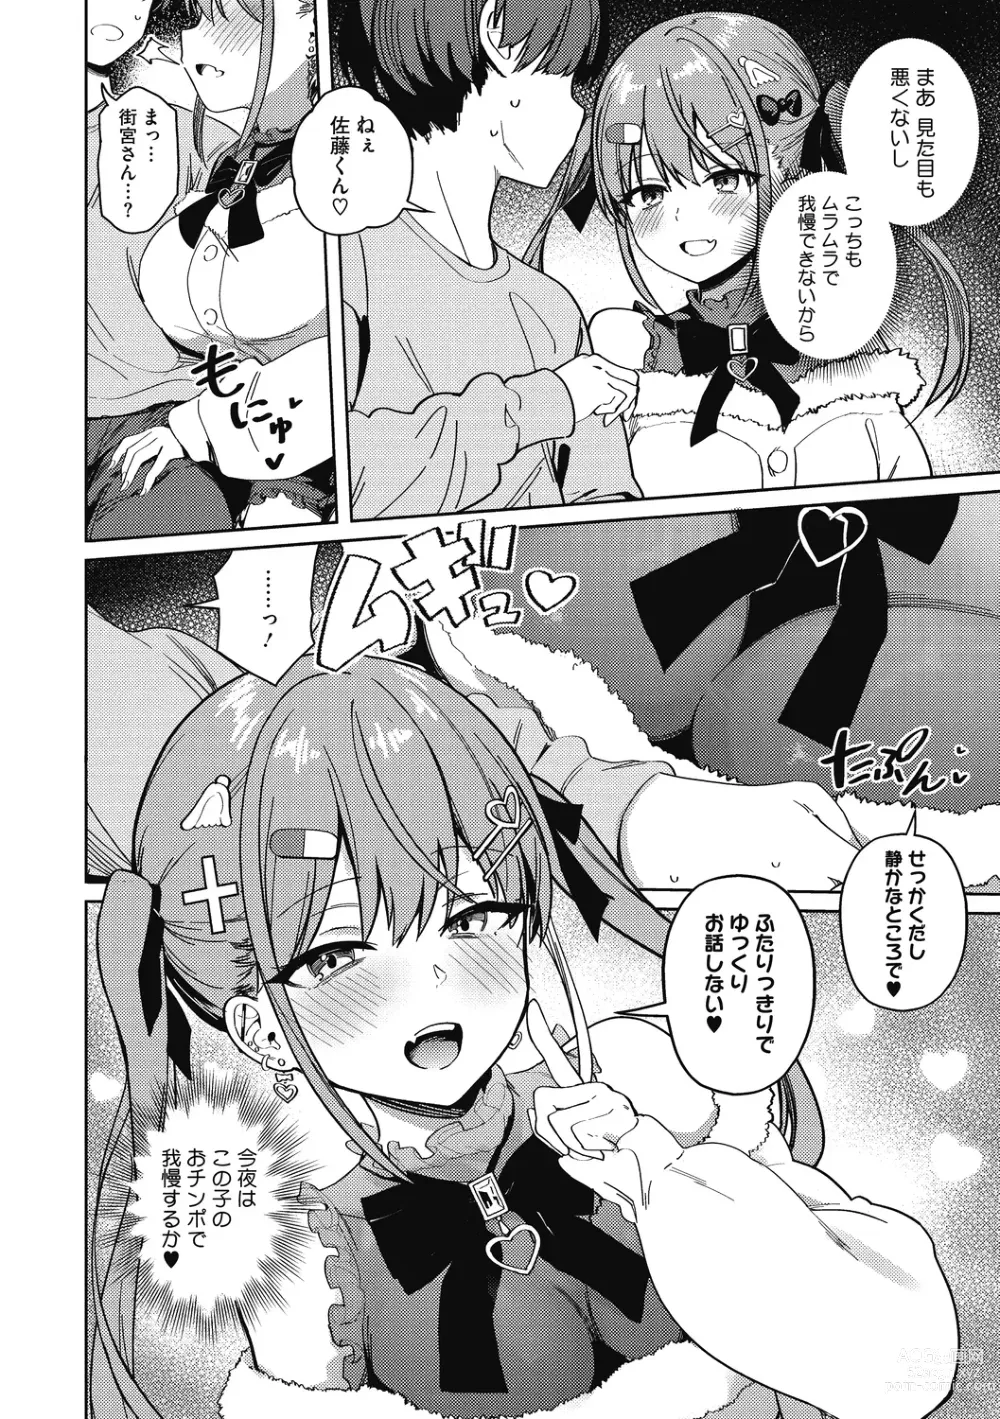 Page 6 of manga Kegasaretai-kei Kanojo.